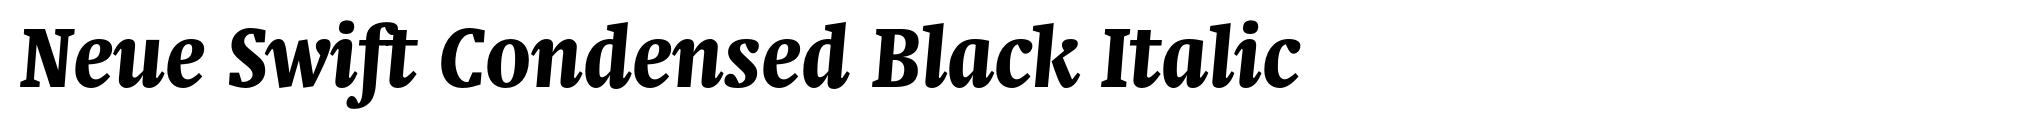 Neue Swift Condensed Black Italic image